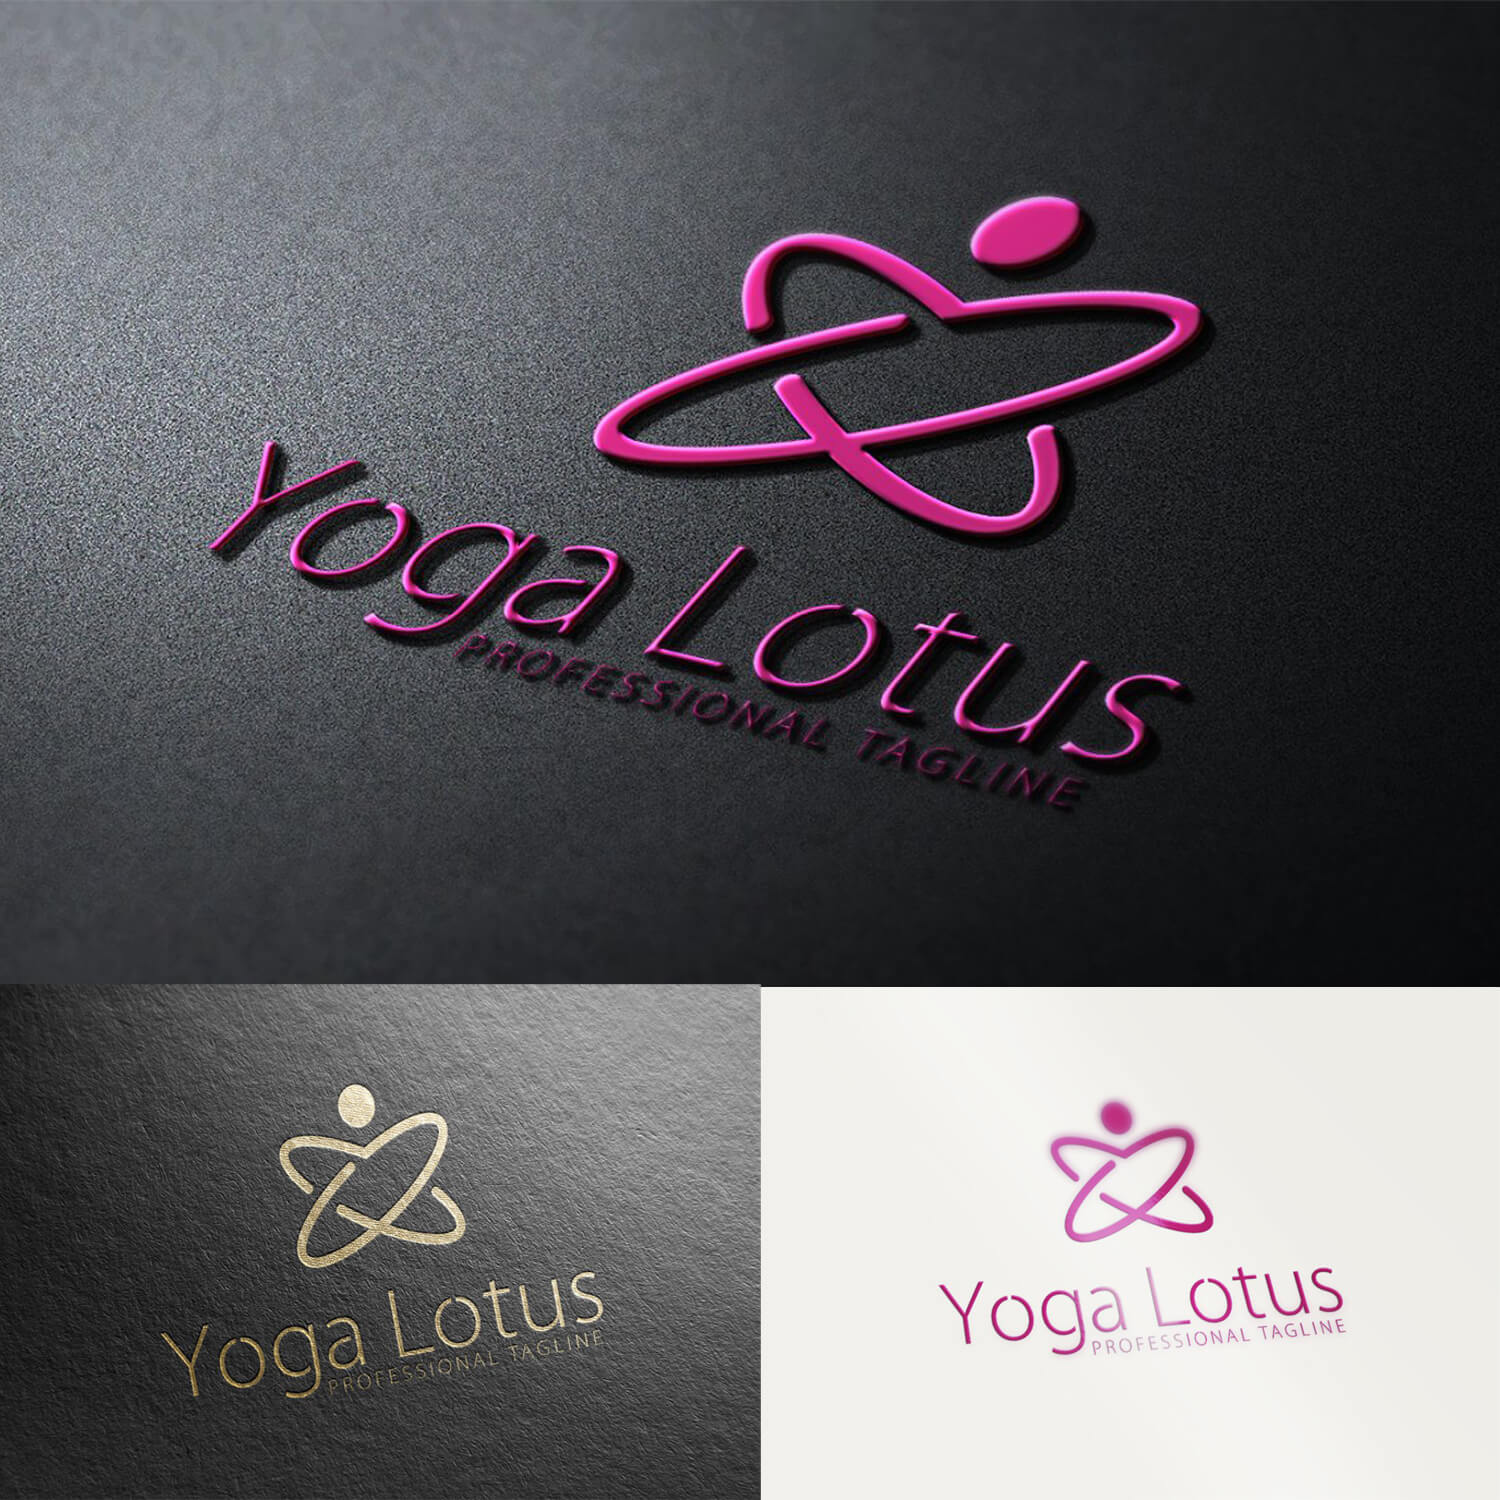 Three variants of the Yogo lotus logo.